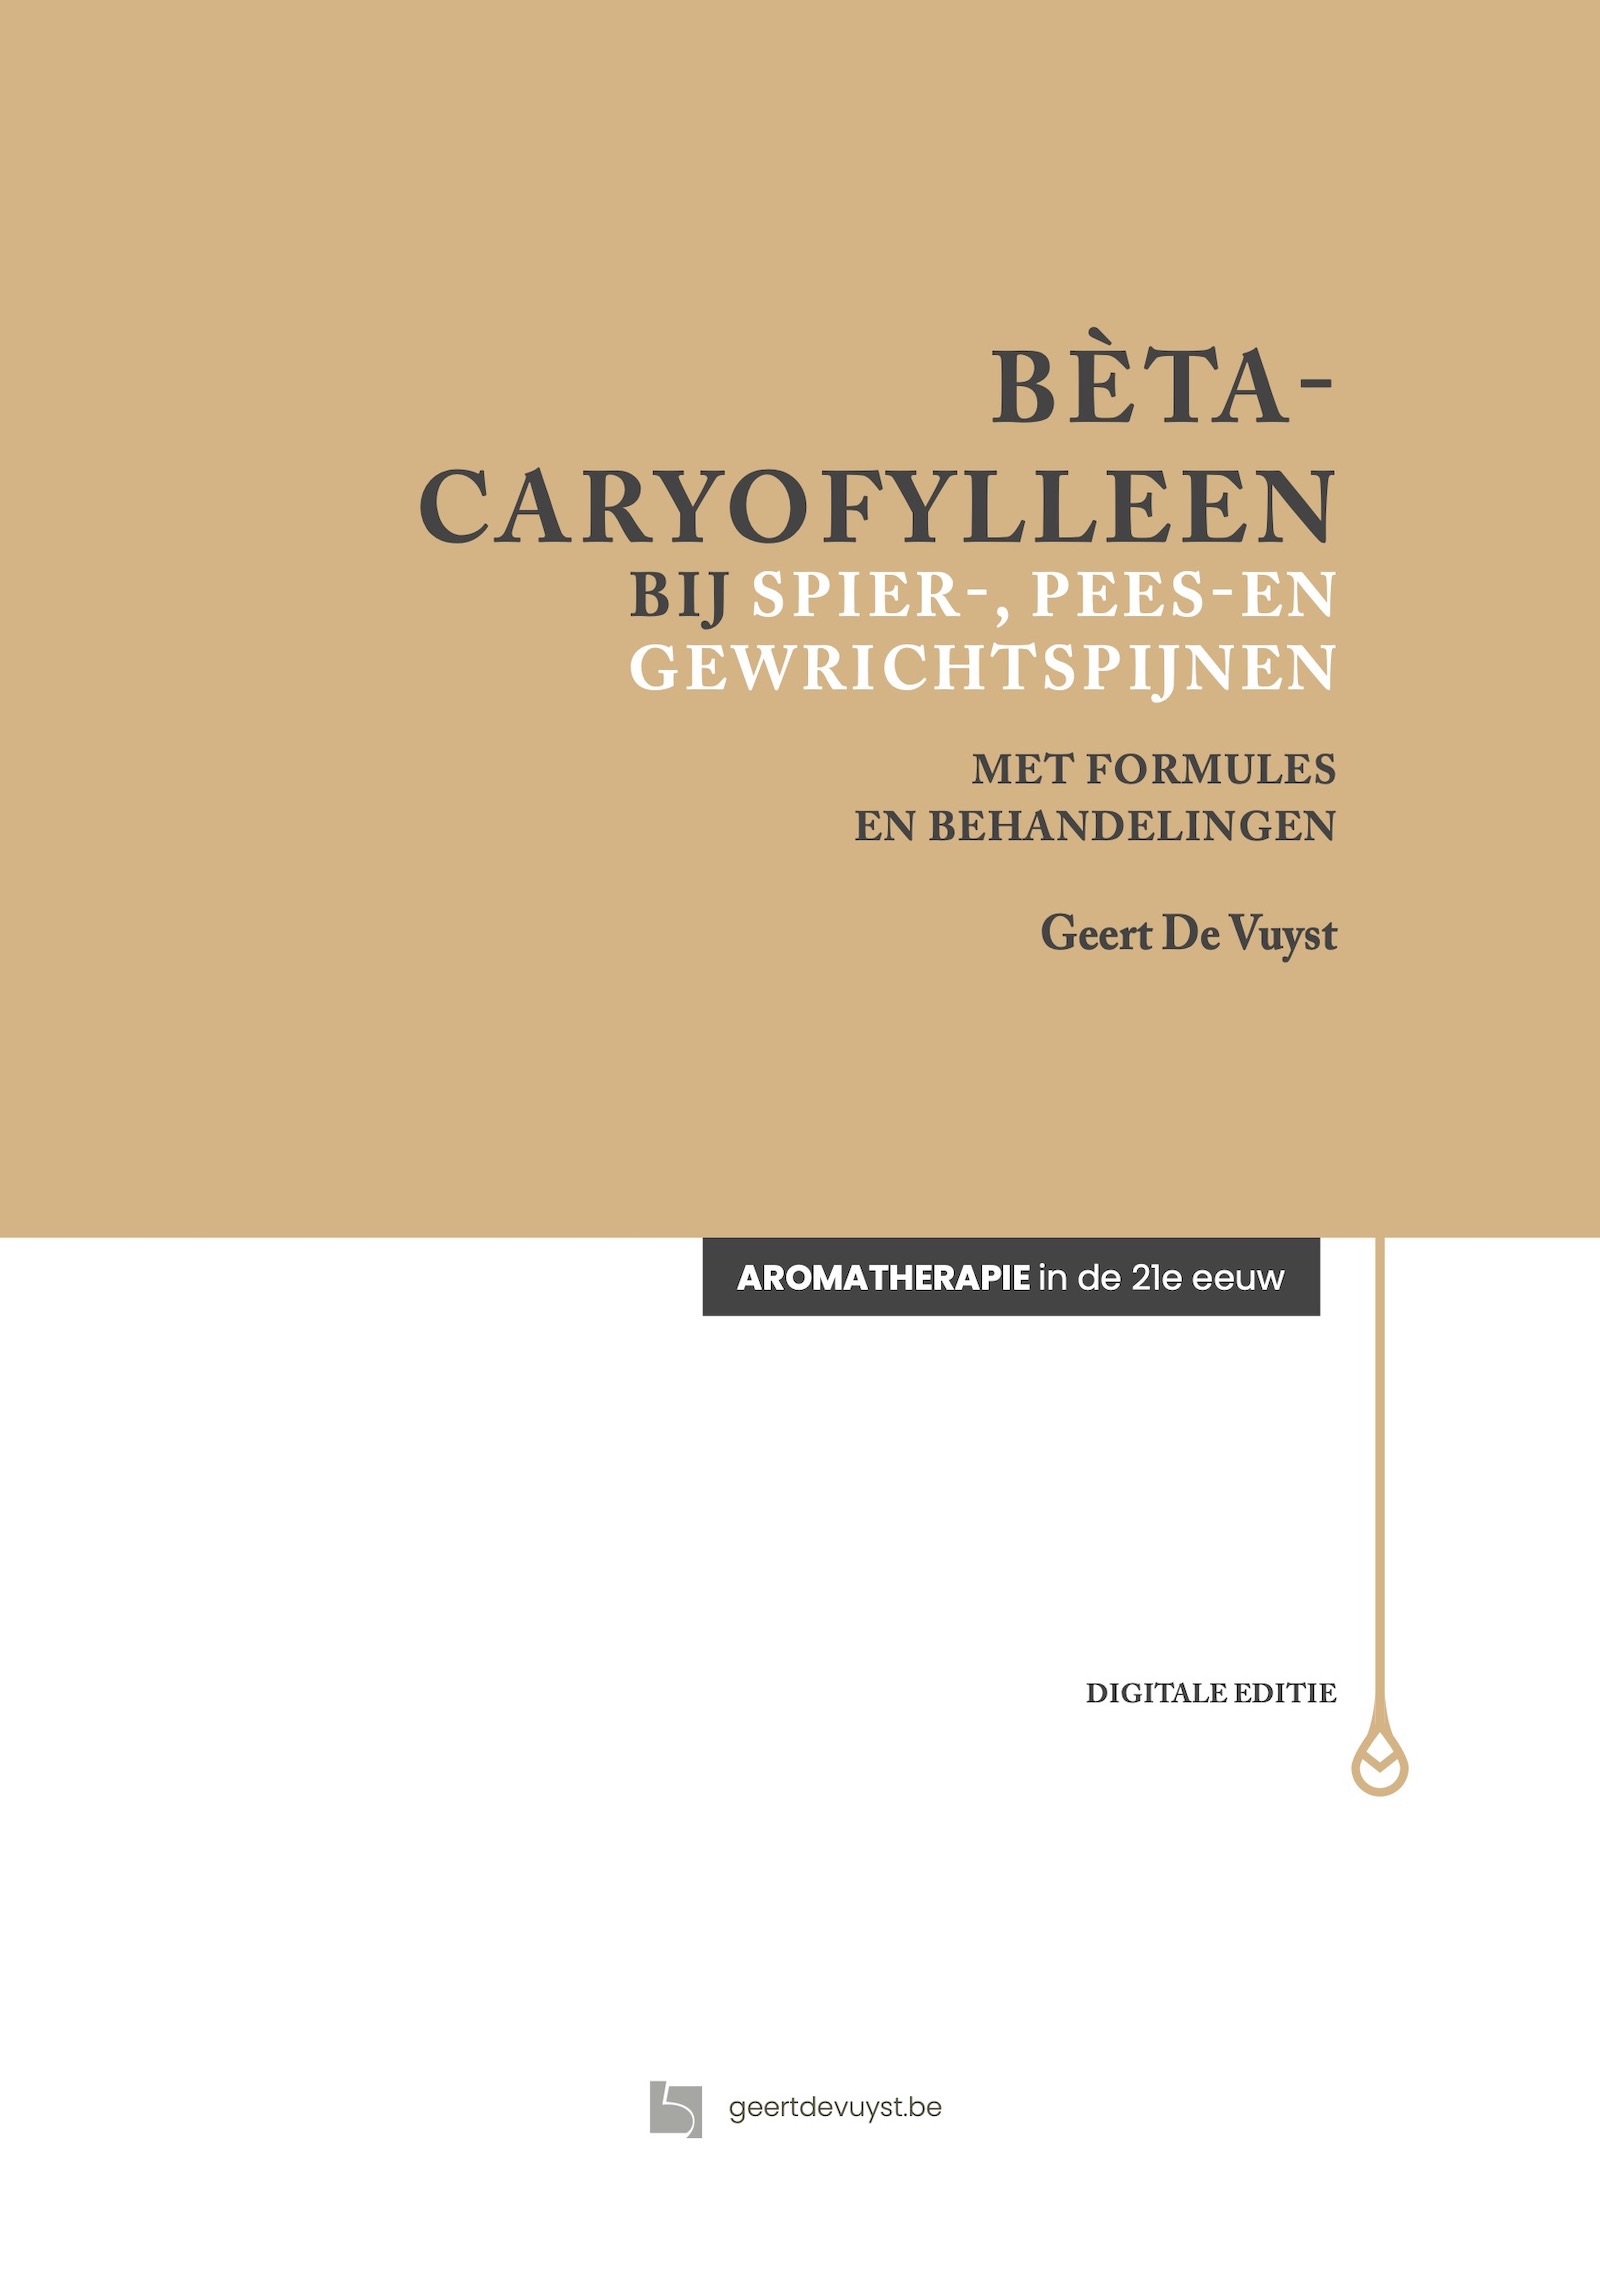 bèta-caryofylleen - Geert De Vuyst